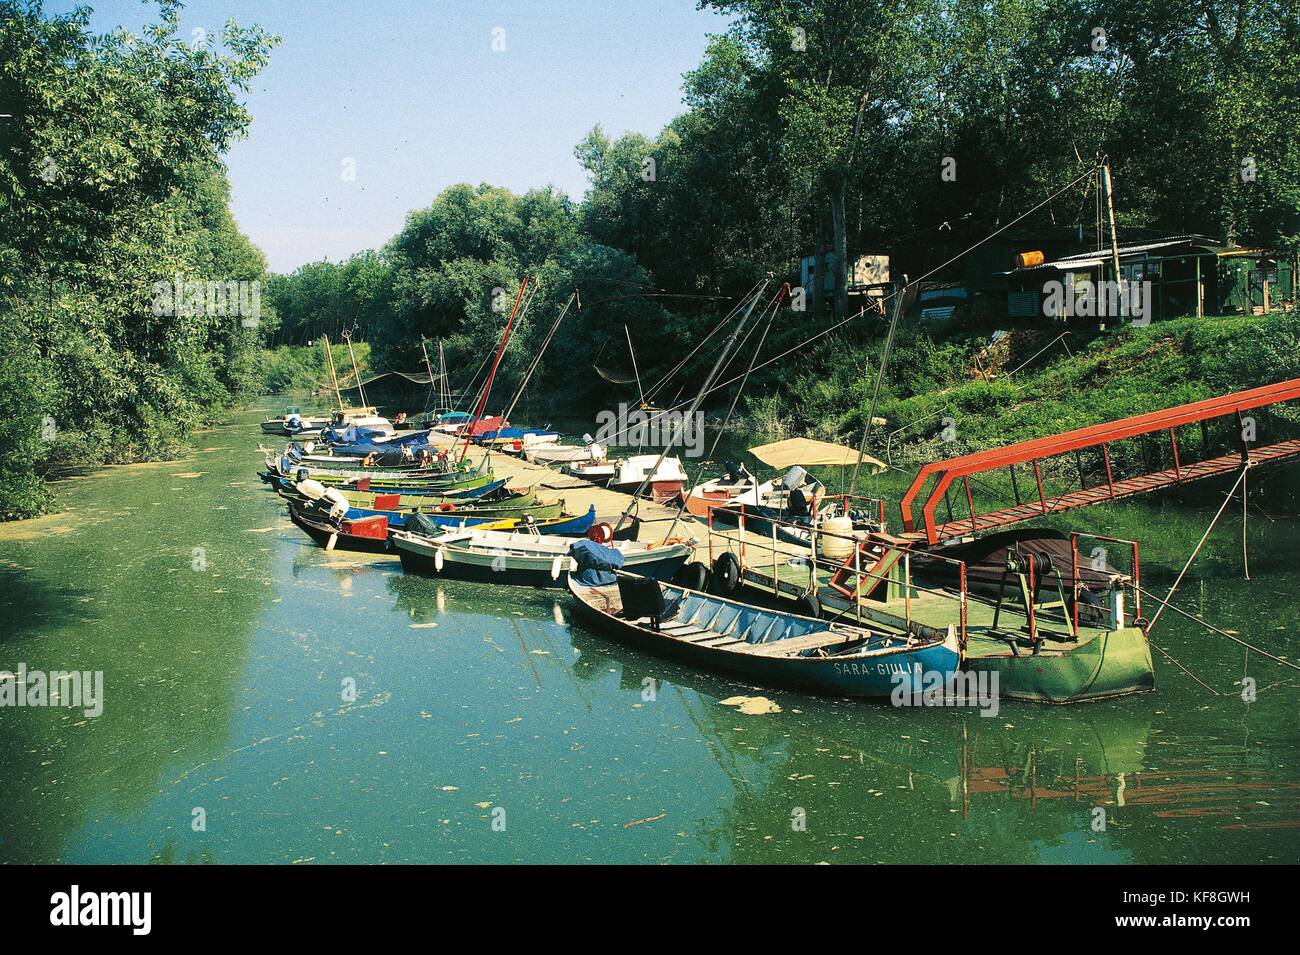 Italy, Emilia Romagna Region, Brescello, Marina on Enza River Stock Photo